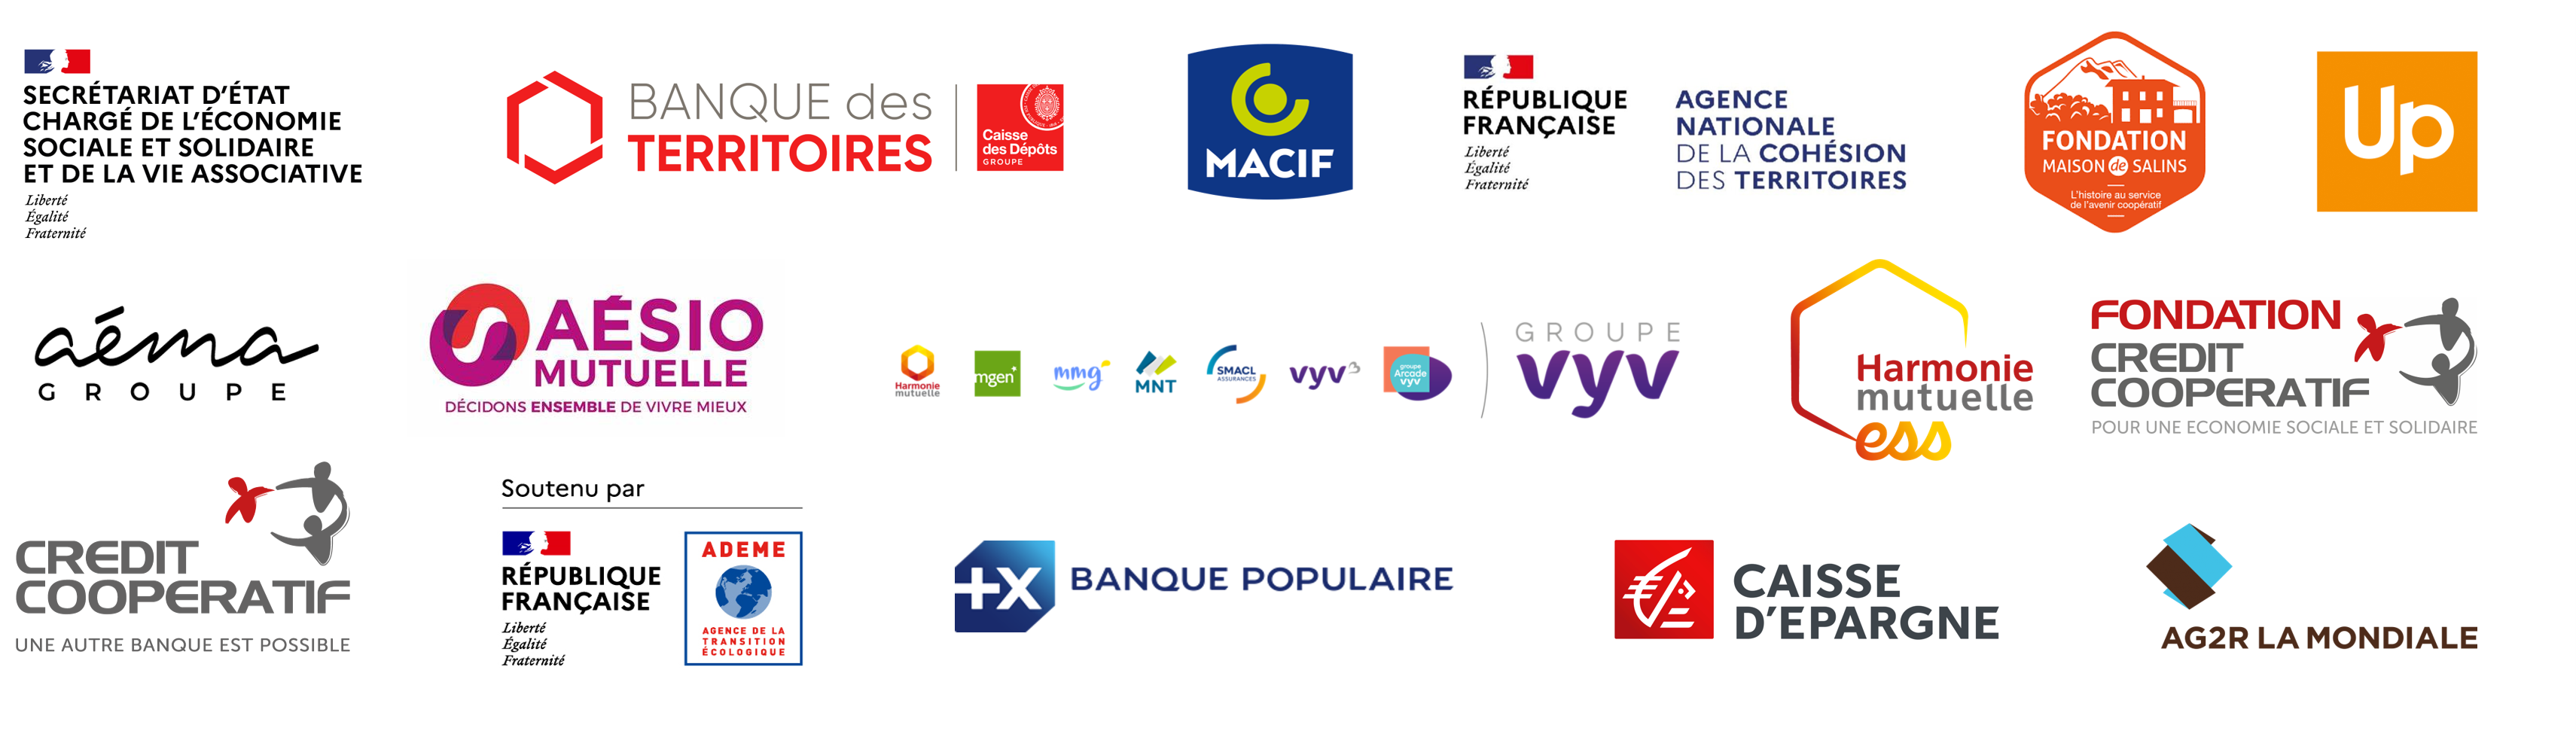 Les partenaires d'ESS France